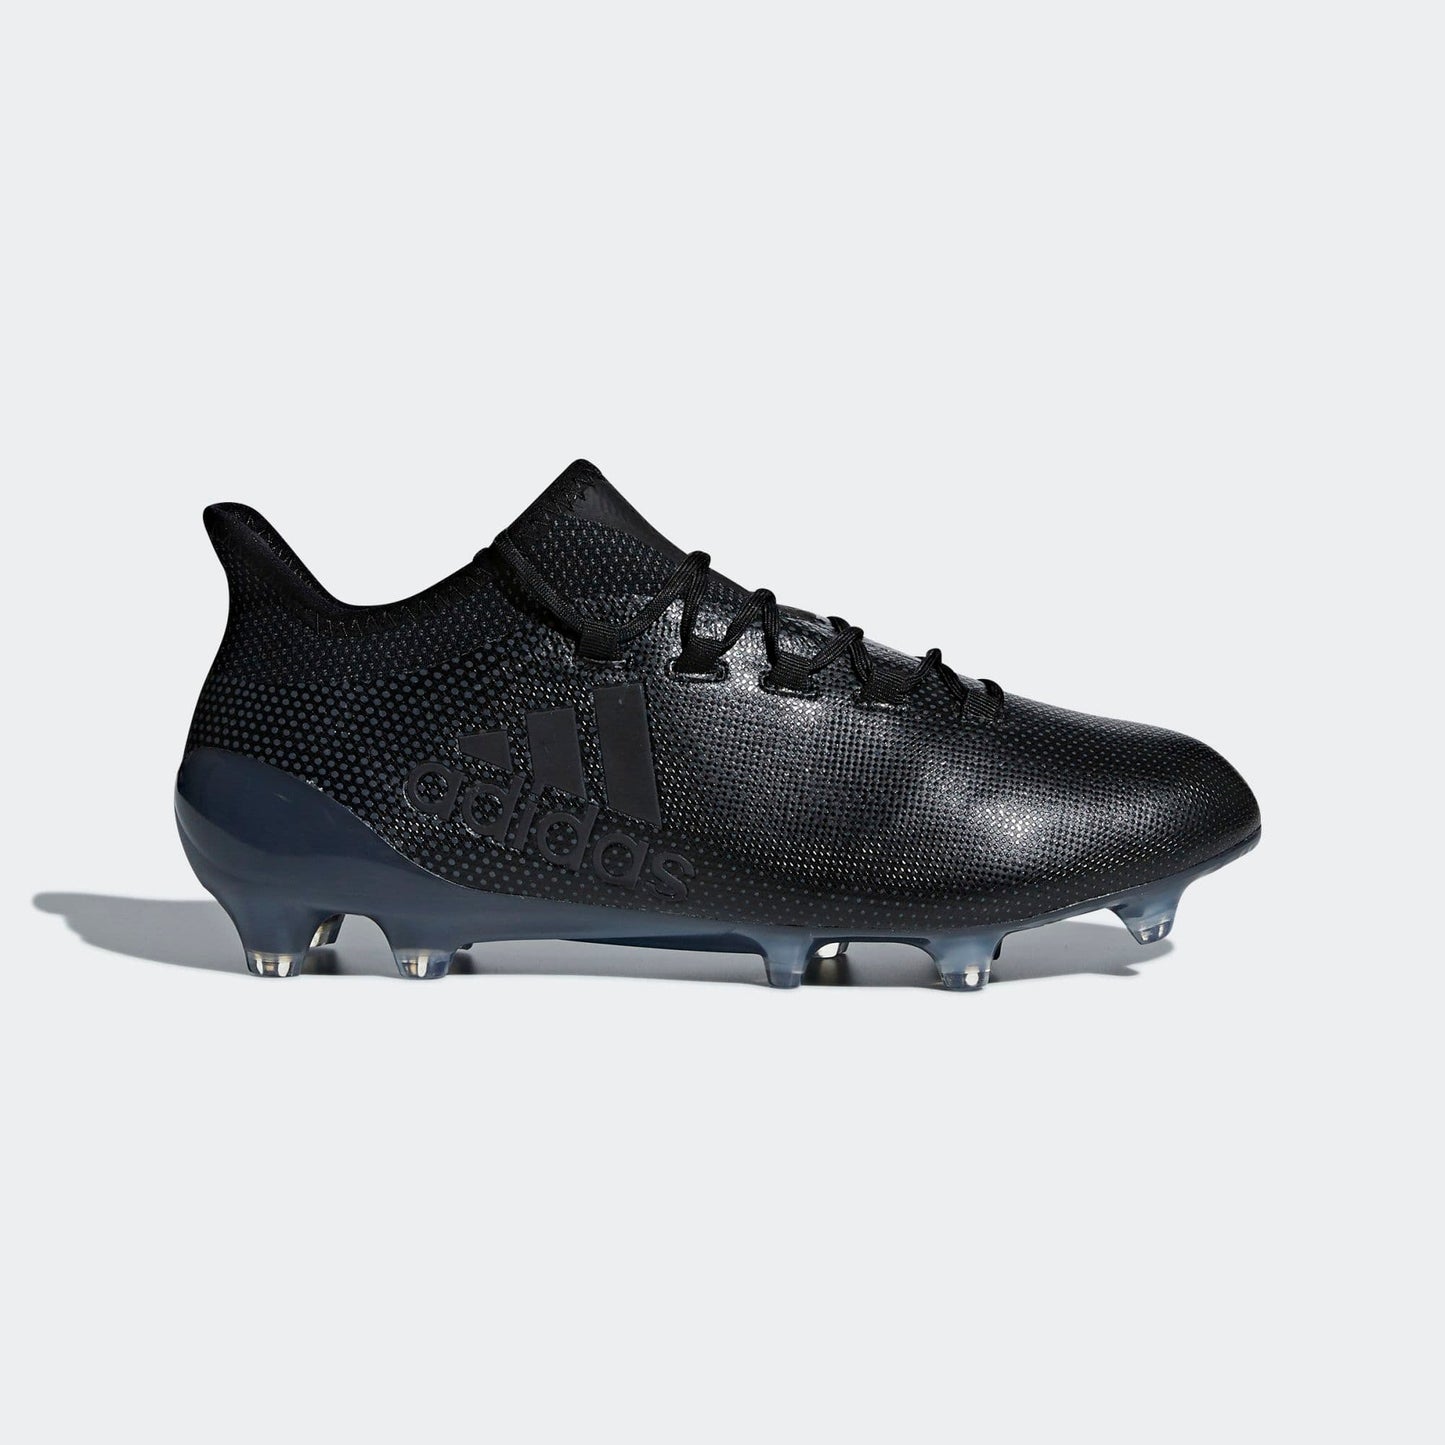 Adidas X 17.1 FG Football Boots - Black